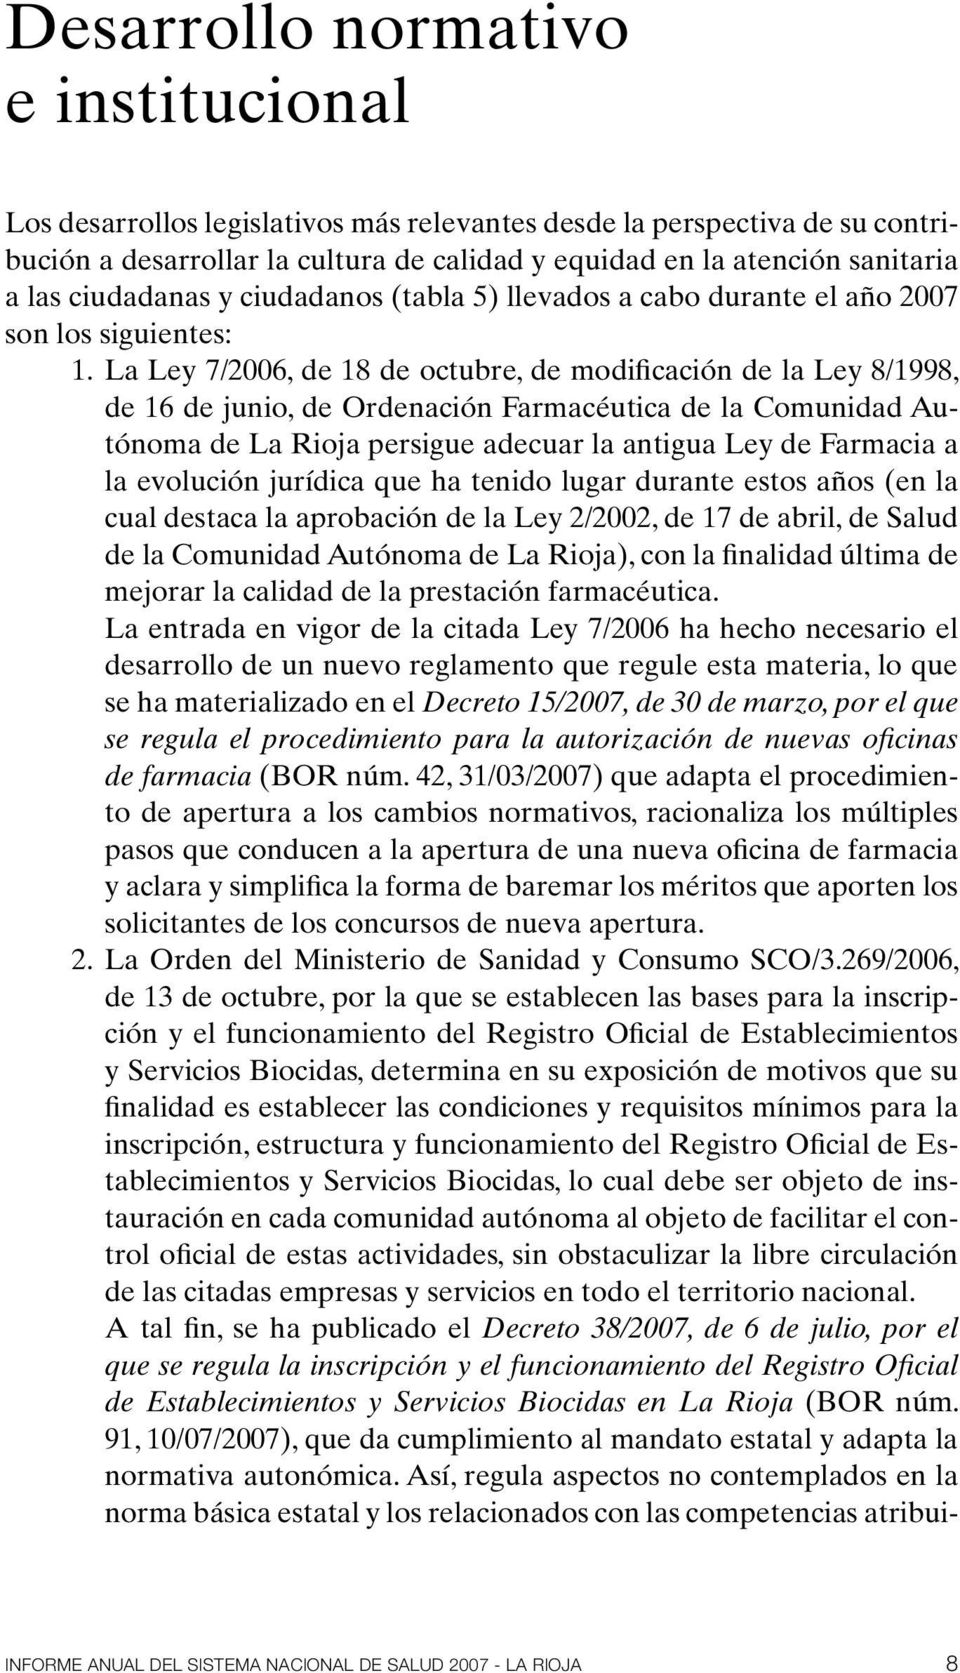 La Ley 7/2006, de 18 de octubre, de modificación de la Ley 8/1998, de 16 de junio, de Ordenación Farmacéutica de la Comunidad Autónoma de La Rioja persigue adecuar la antigua Ley de Farmacia a la